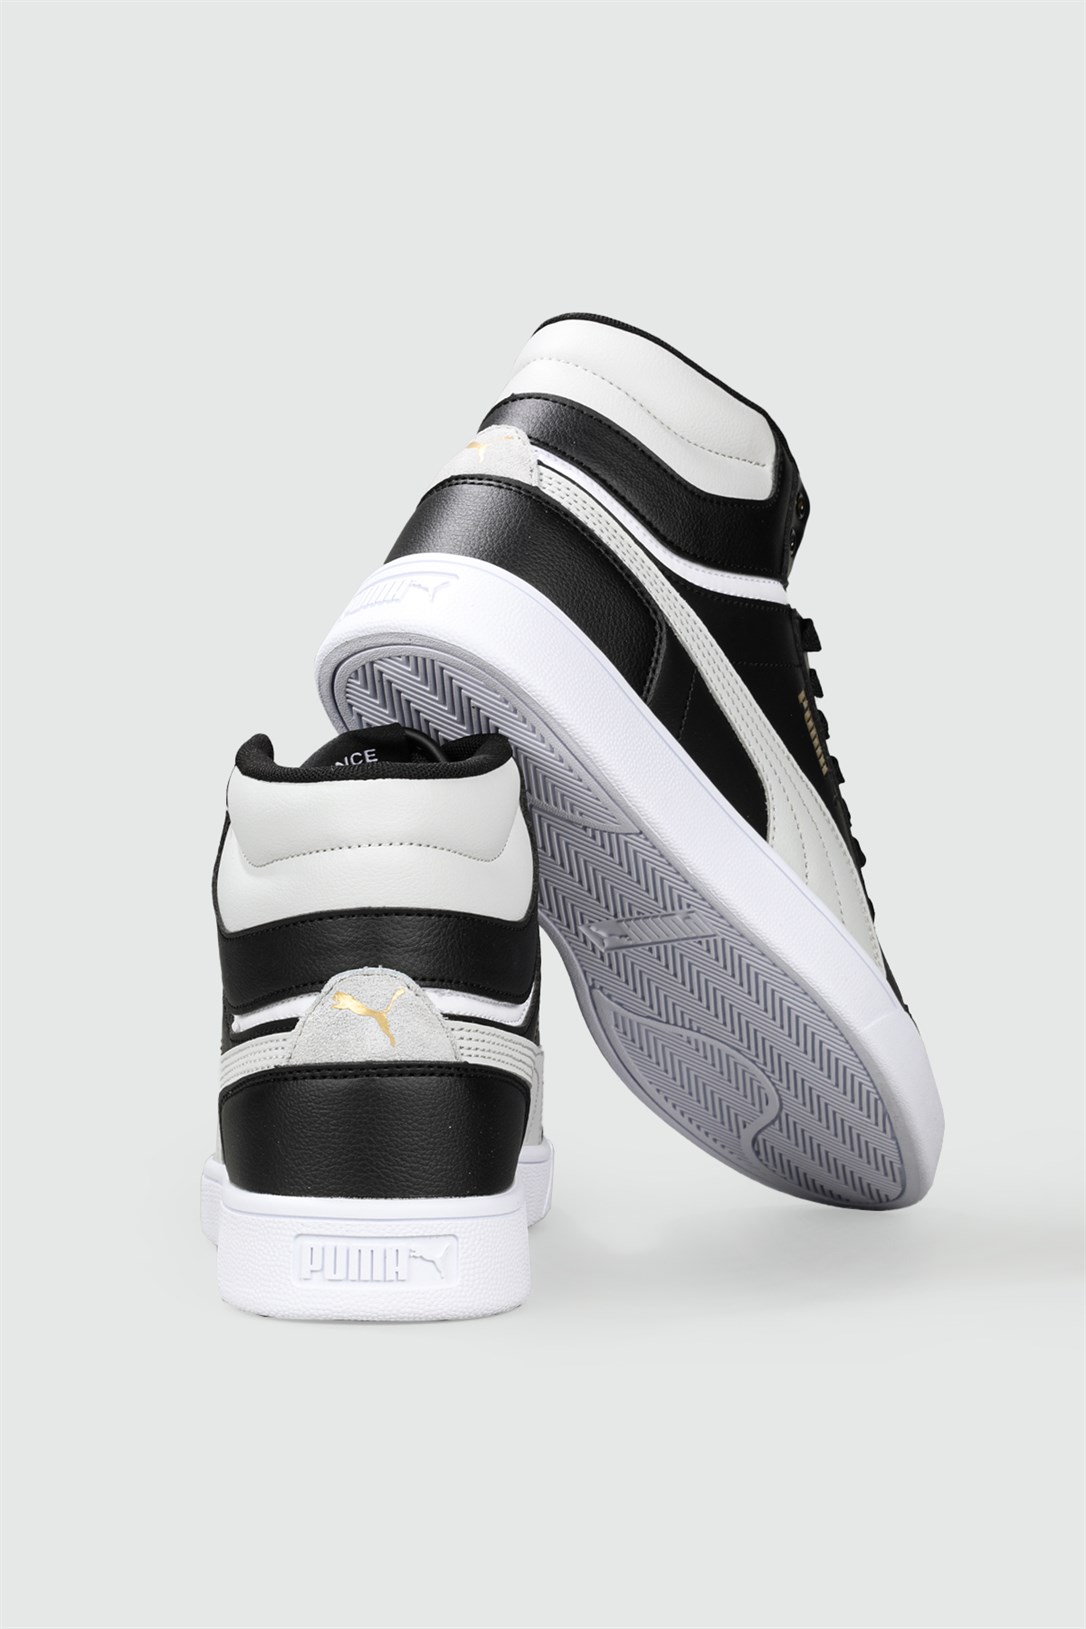 Puma Bilekten Boğazlı Basket Siyah Beyaz Erkek Spor Ayakkabı 380748-02 |  Ayakkabı City